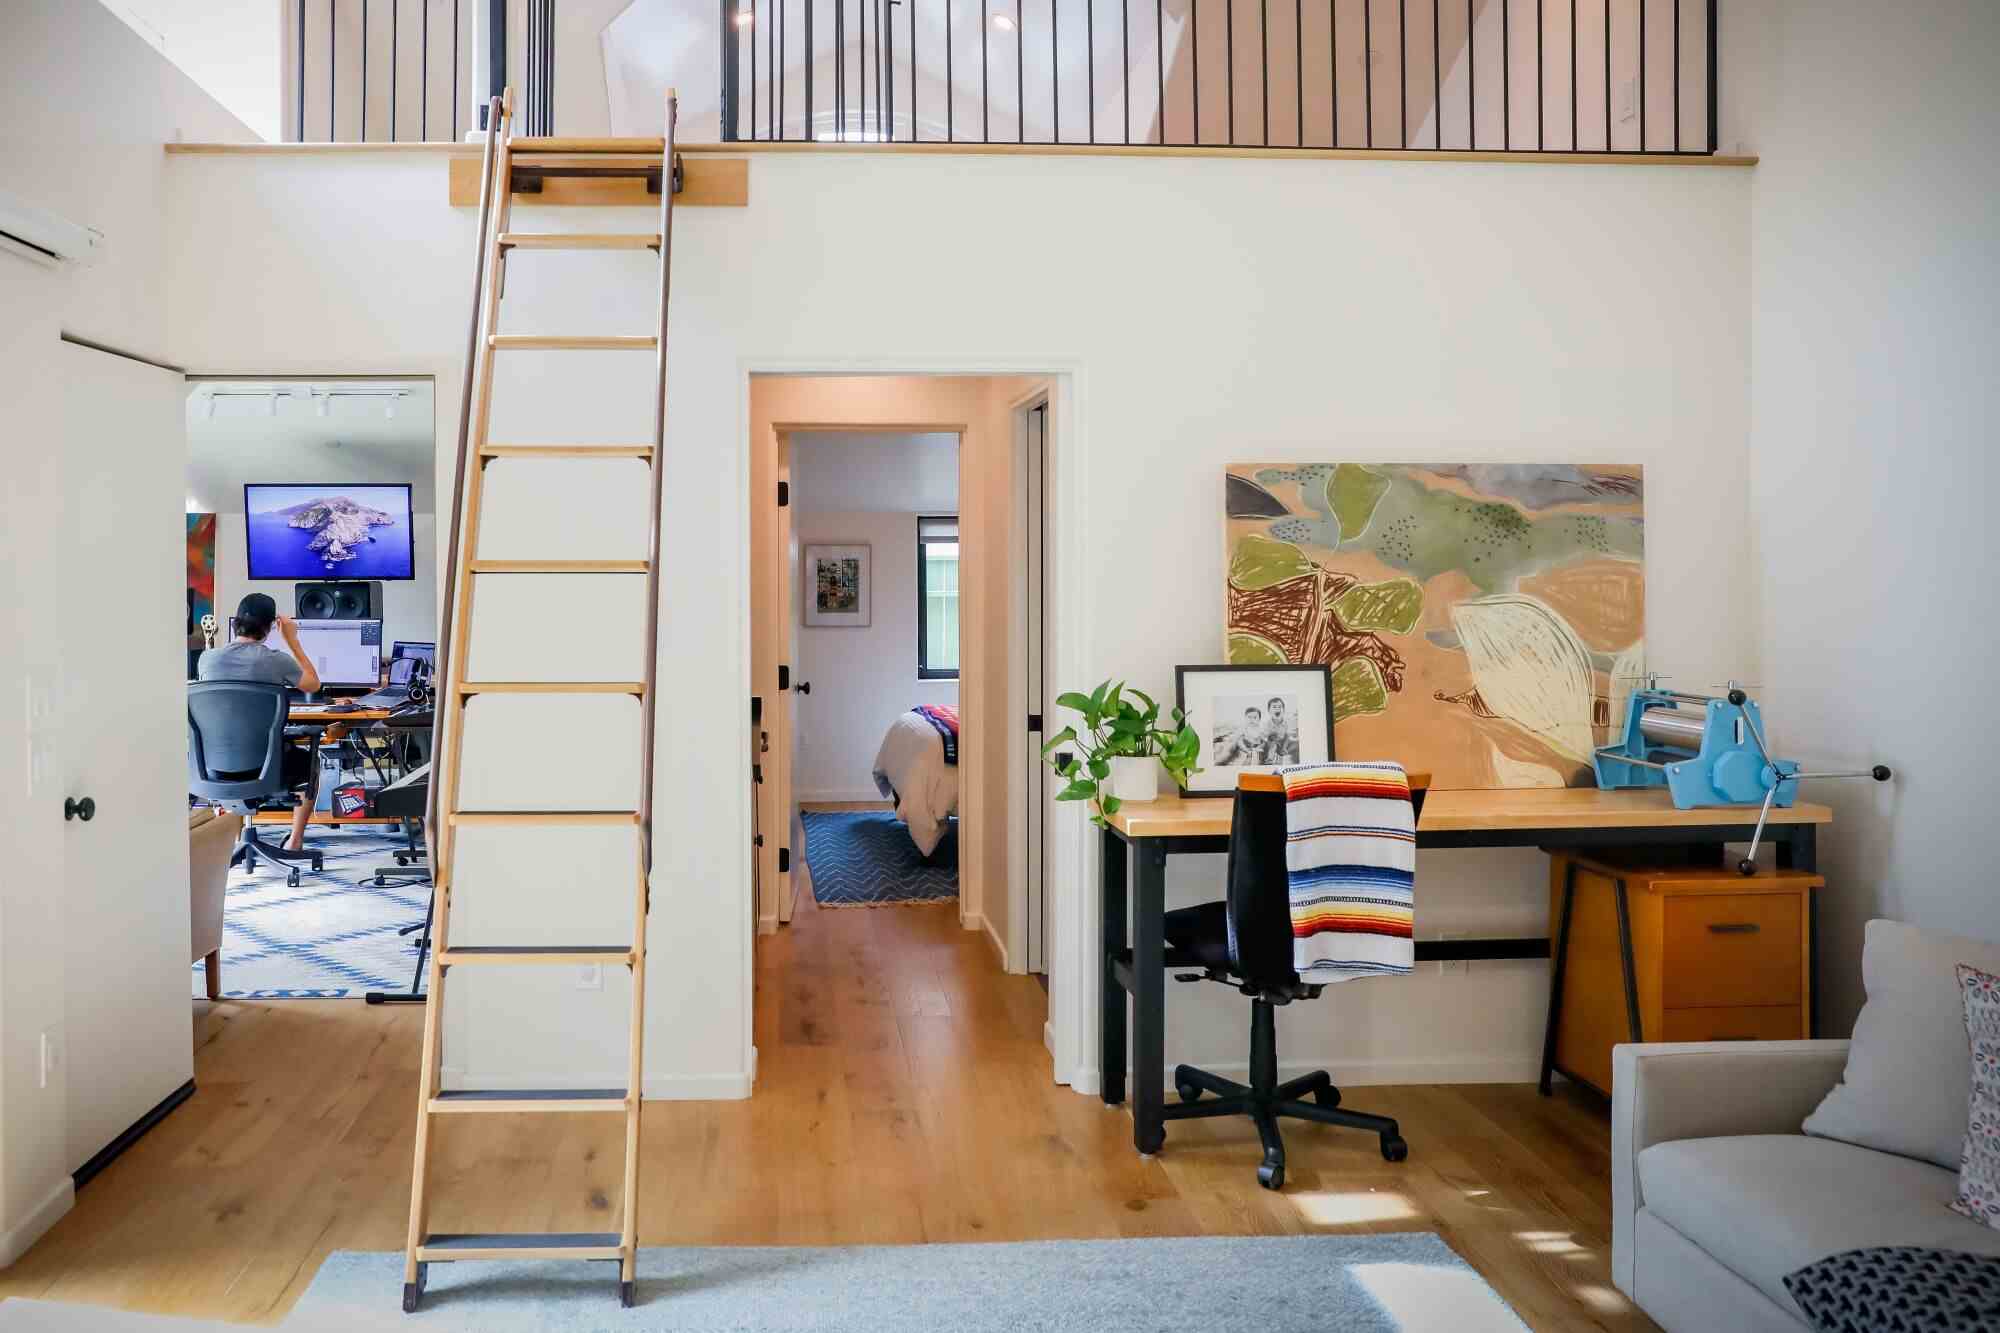 Blick auf eine Leiter, die zu einem Dachboden führt, und eine Tür, die zu einem Büro führt, in dem ein Mann neben dem Dachboden arbeitet